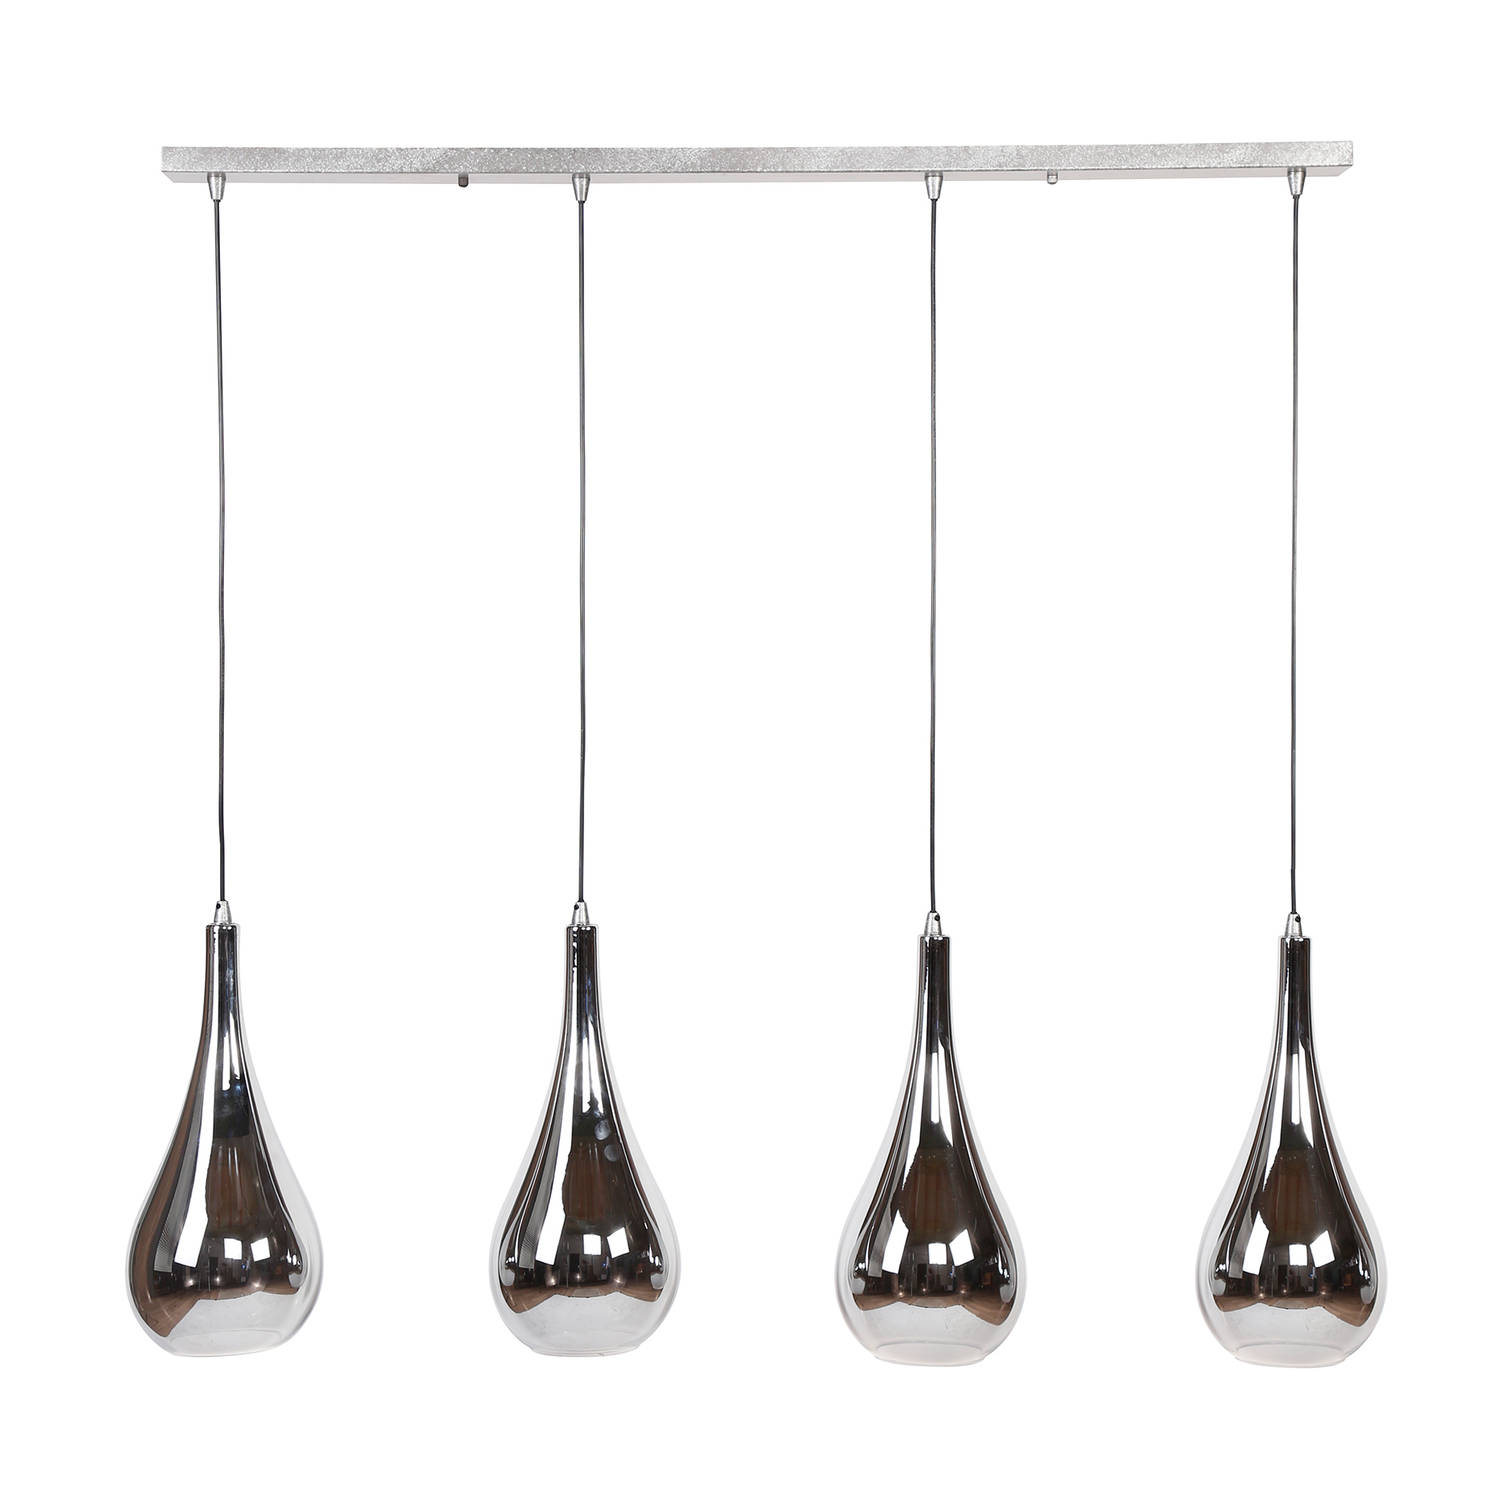 Hoyz Hanglamp Met 4 Lampen Serie Silver Drop Handgeblazen Glas